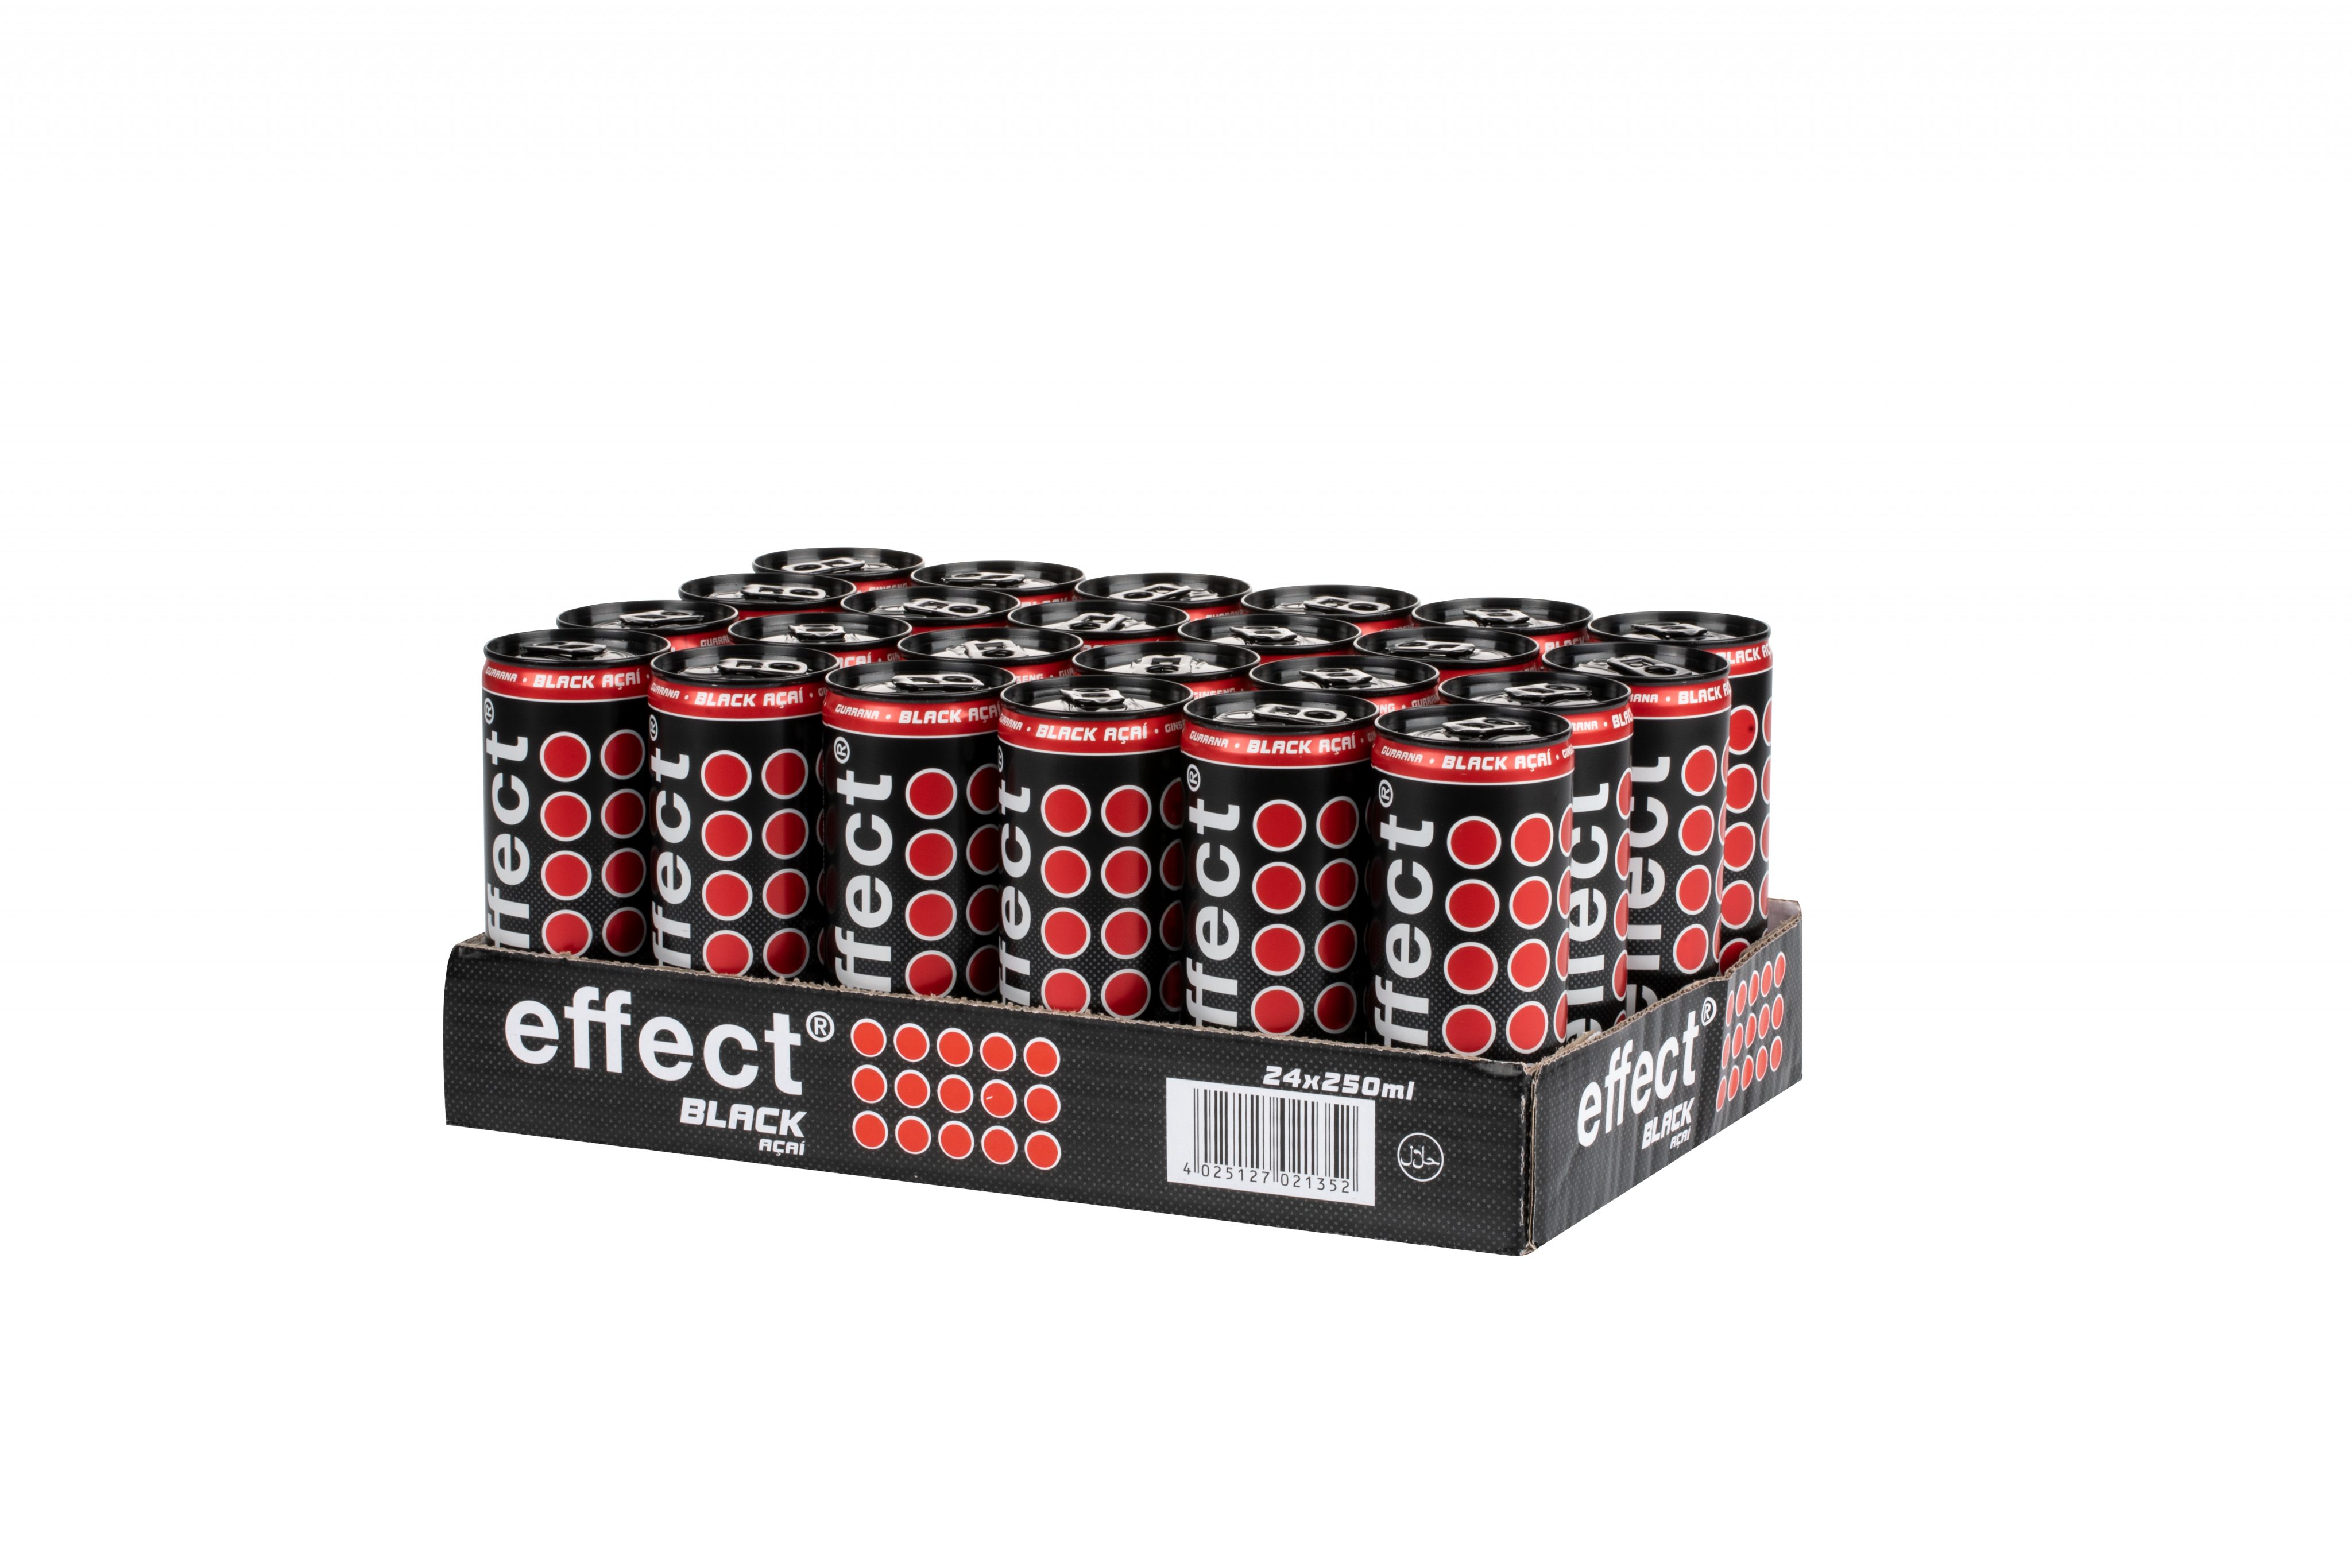 effect® Black Açai 24 x 0,25€ inkl. Pfand